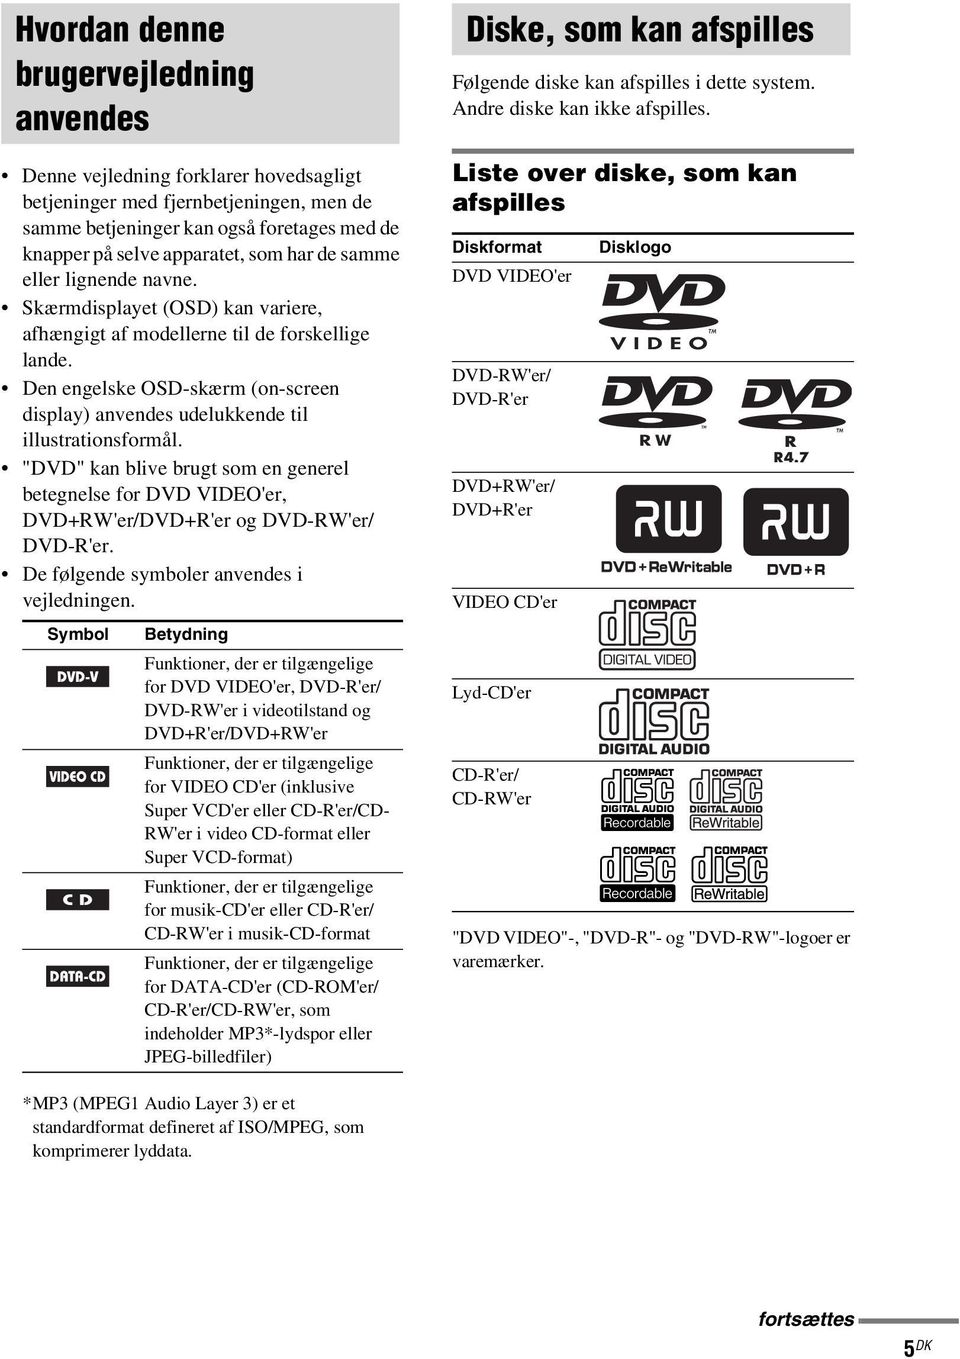 Den engelske OSD-skærm (on-screen display) anvendes udelukkende til illustrationsformål. "DVD" kan blive brugt som en generel betegnelse for DVD VIDEO'er, DVD+RW'er/DVD+R'er og DVD-RW'er/ DVD-R'er.